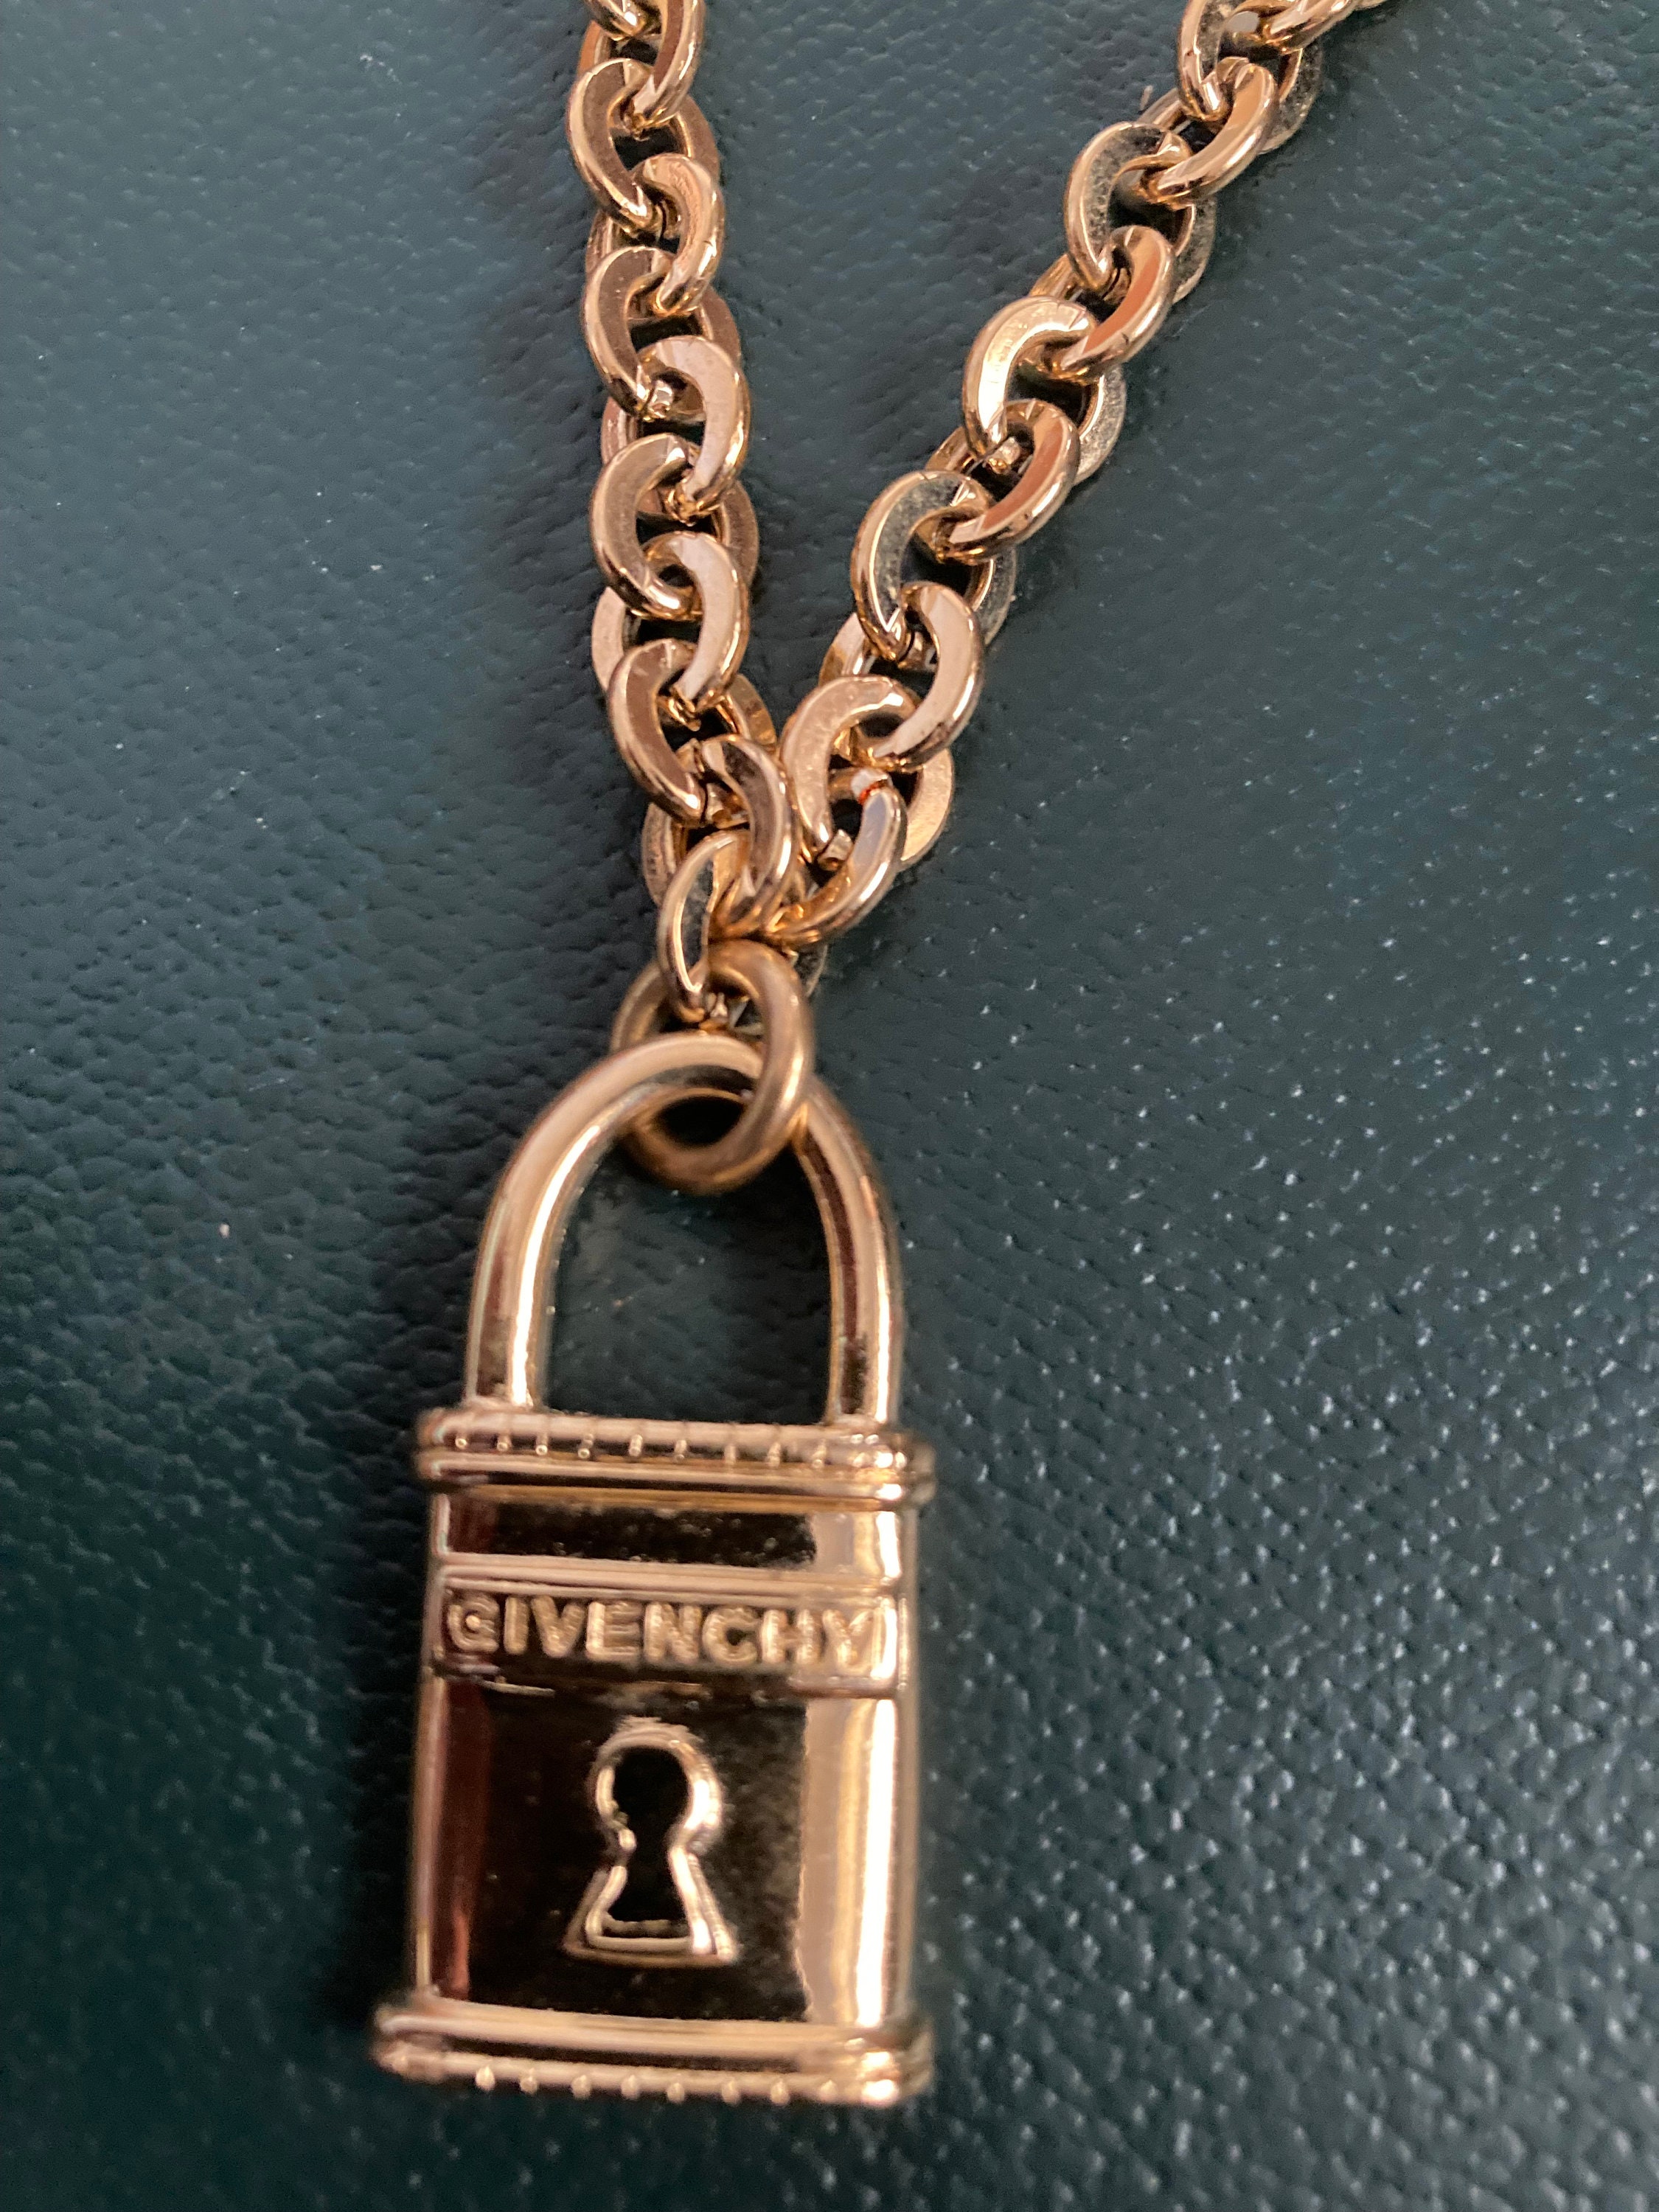 Givenchy U Lock Pendant Necklace - ShopStyle